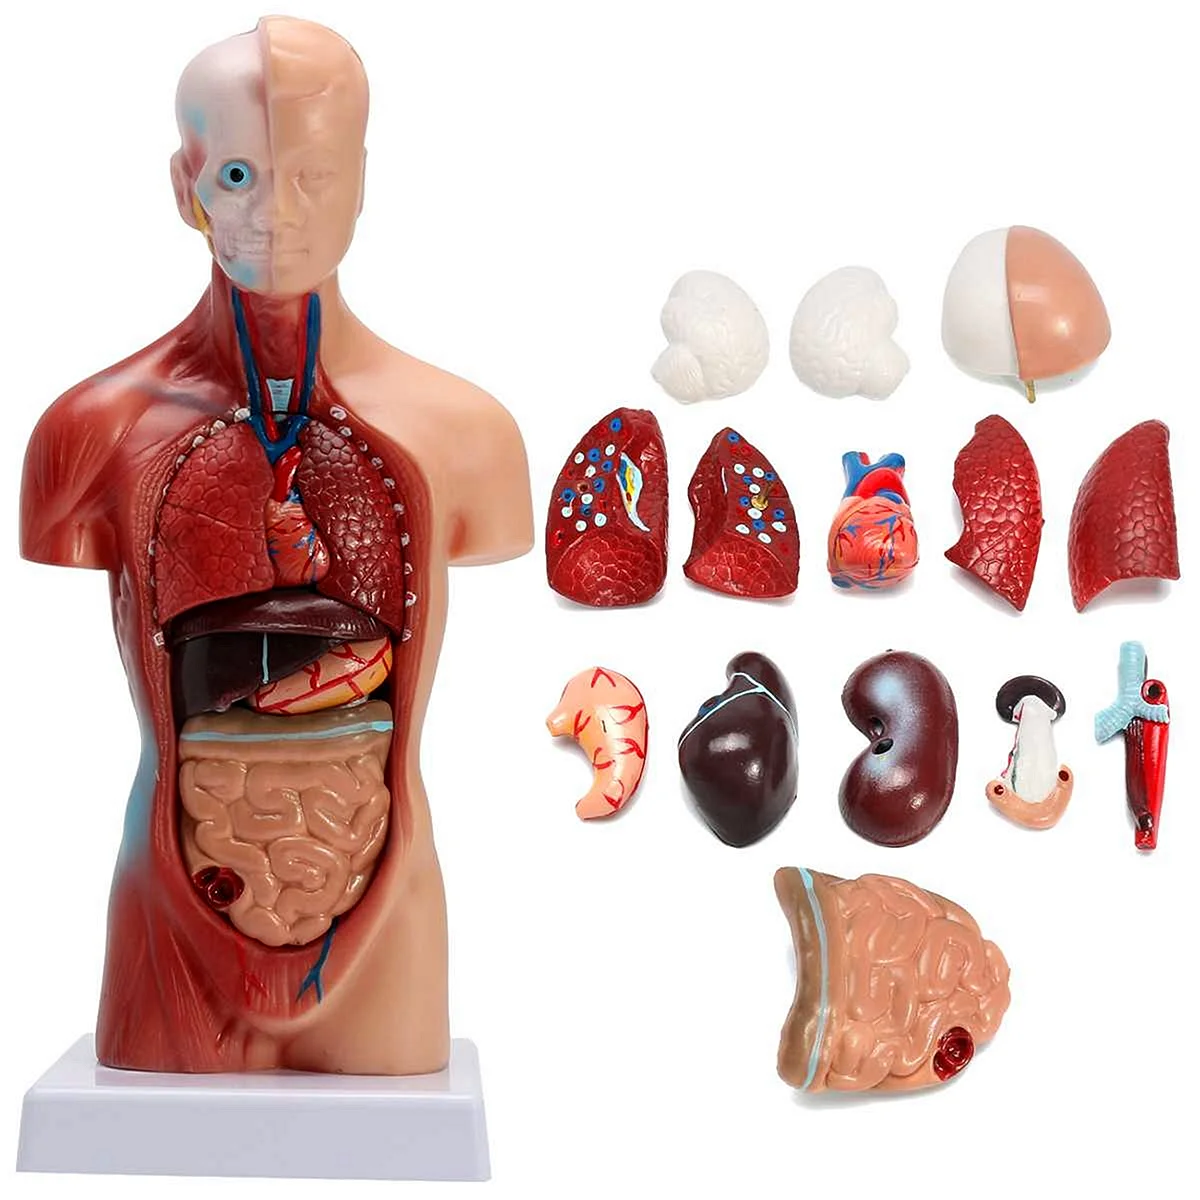 Анатомическая модель торса человека